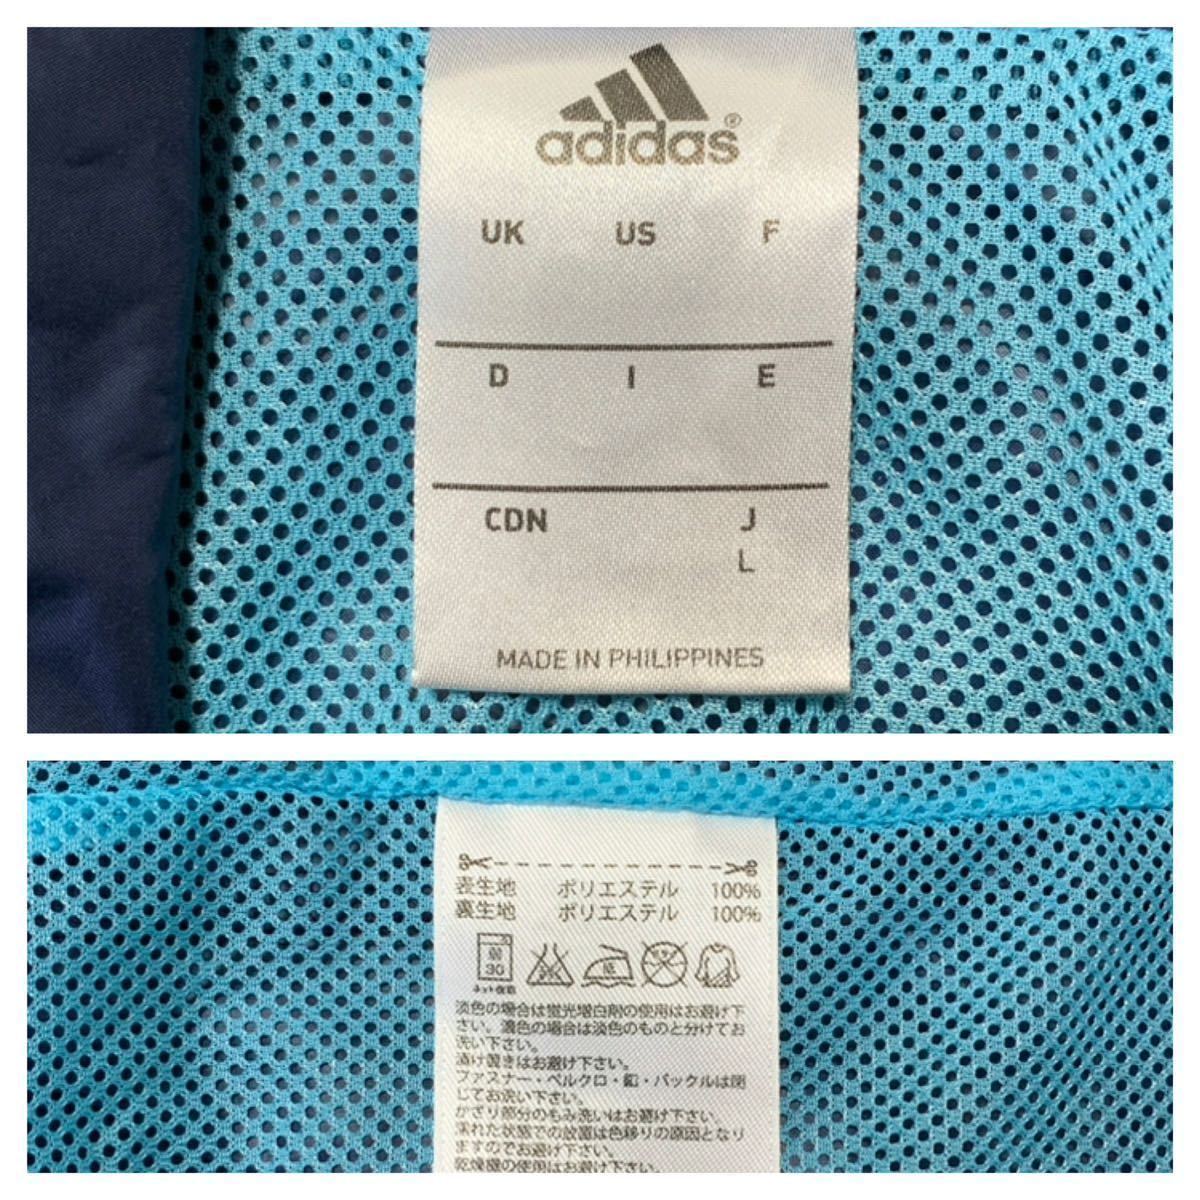 ( женский ) adidas Adidas // climaproof длинный рукав сетка подкладка Zip ветровка жакет ( темно-синий серия ) размер L